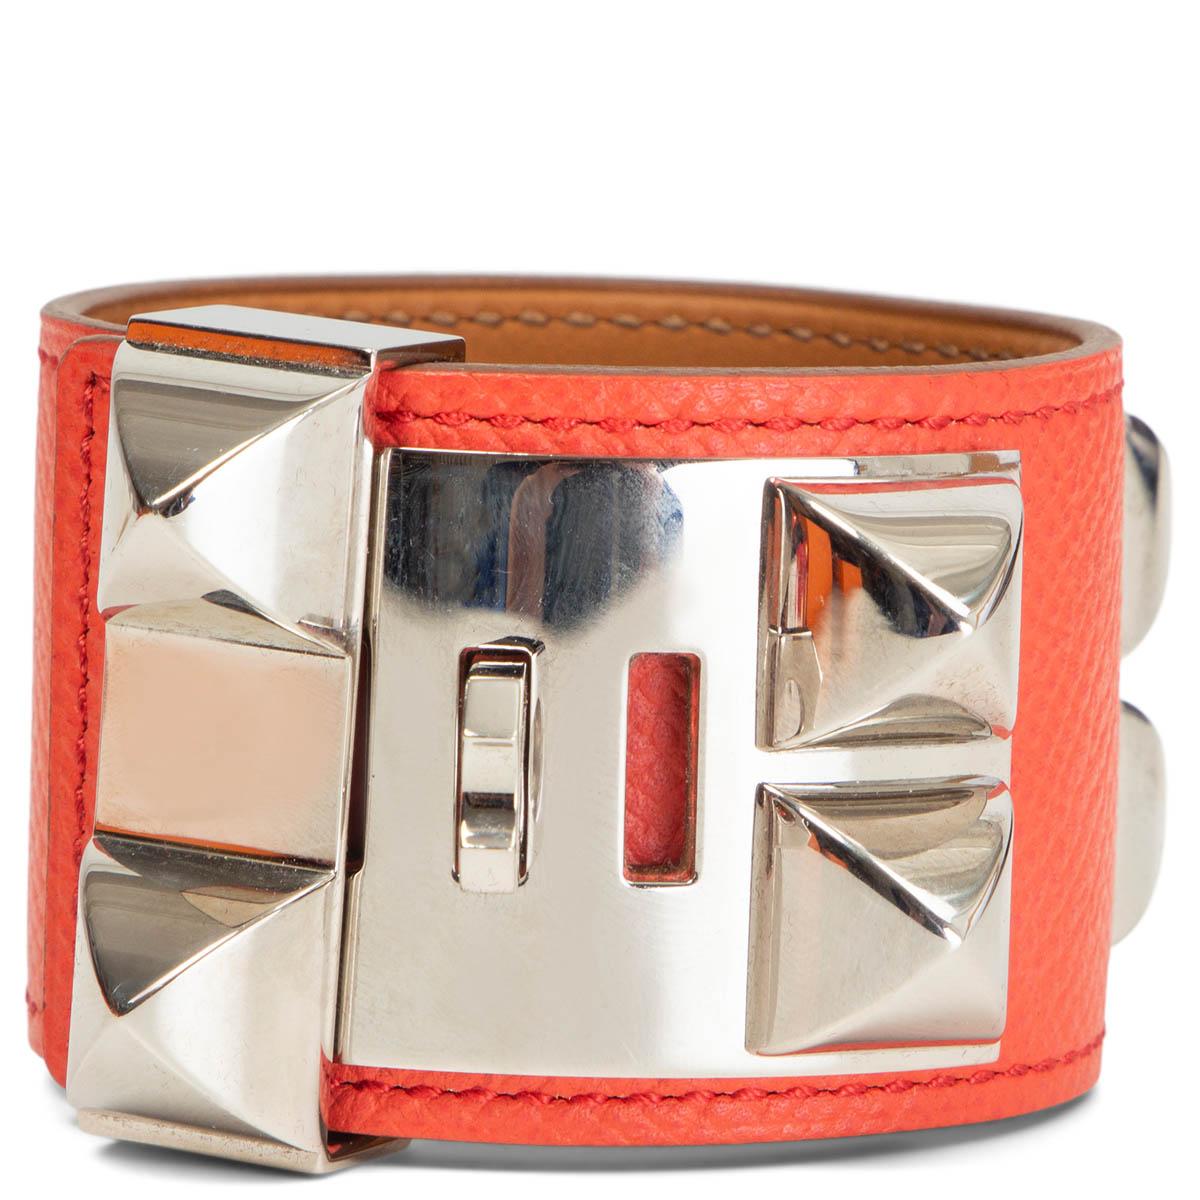 100% authentisches Hermès Collier de Chien Armband aus Rose Jaipur Epsom Leder mit Palladium Hardware. Hat mit schwachen natürlichen Kratzern auf die Hardware getragen worden. Insgesamt in ausgezeichnetem Zustand. Wird mit Staubbeutel und Box